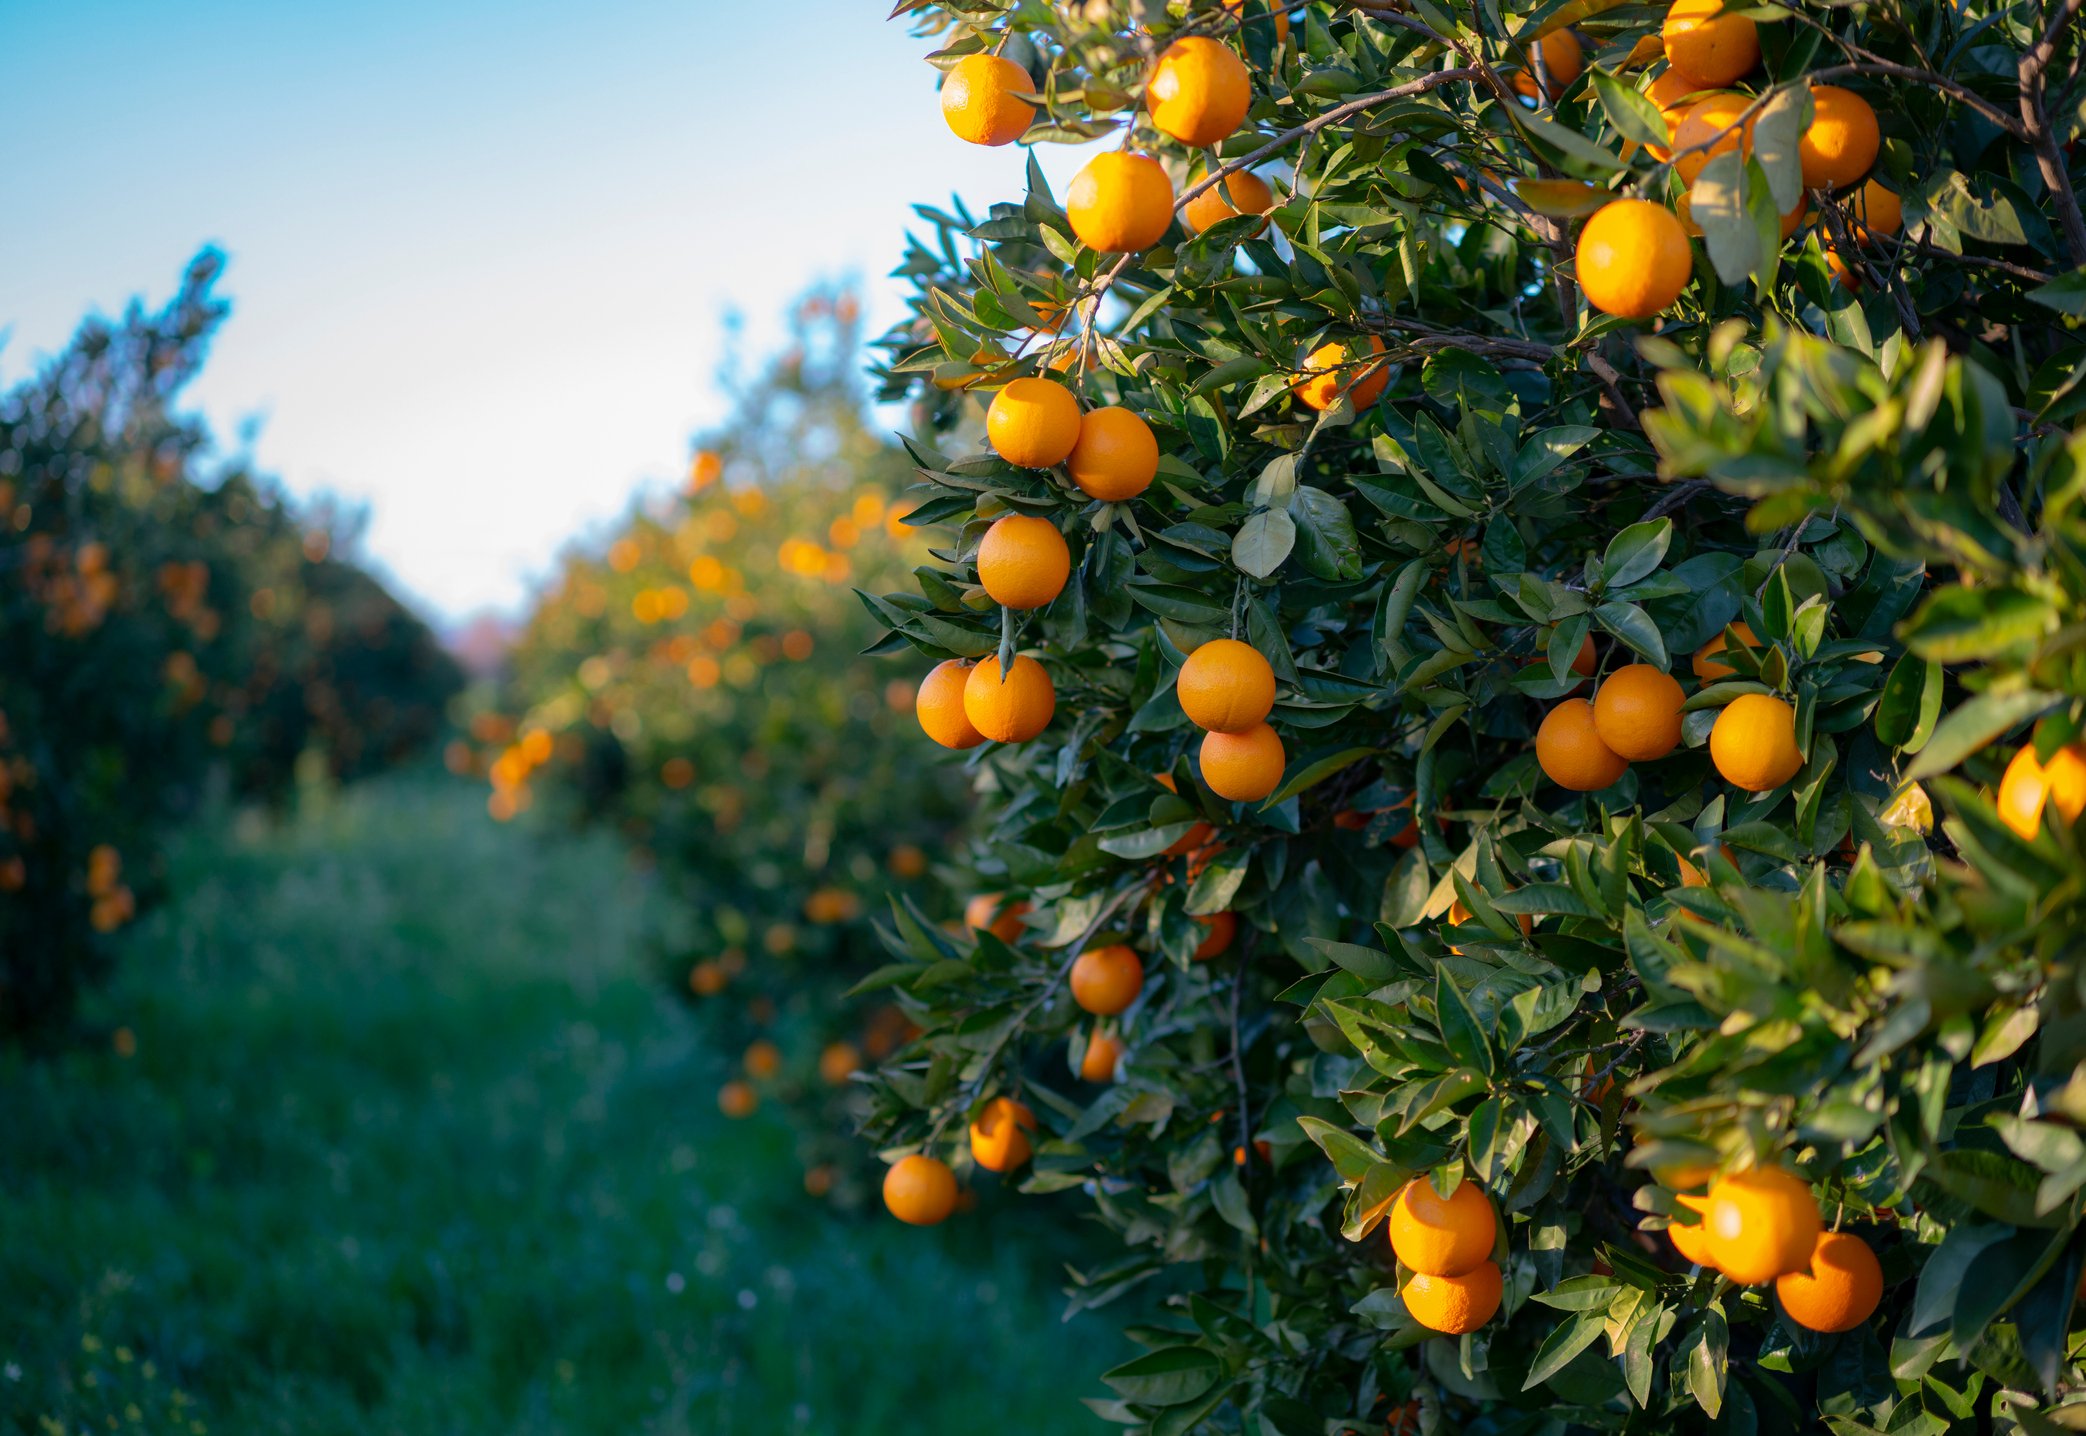 Những loại trái cây cam ngọt chua thực sự là một điều kỳ diệu có thể được trồng và hái ra quả. Vậy bạn đã biết tất cả về lịch sử của chúng chưa? Hãy xem hình ảnh liên quan để khám phá những thông tin thú vị nhất về loại quả này nhé.